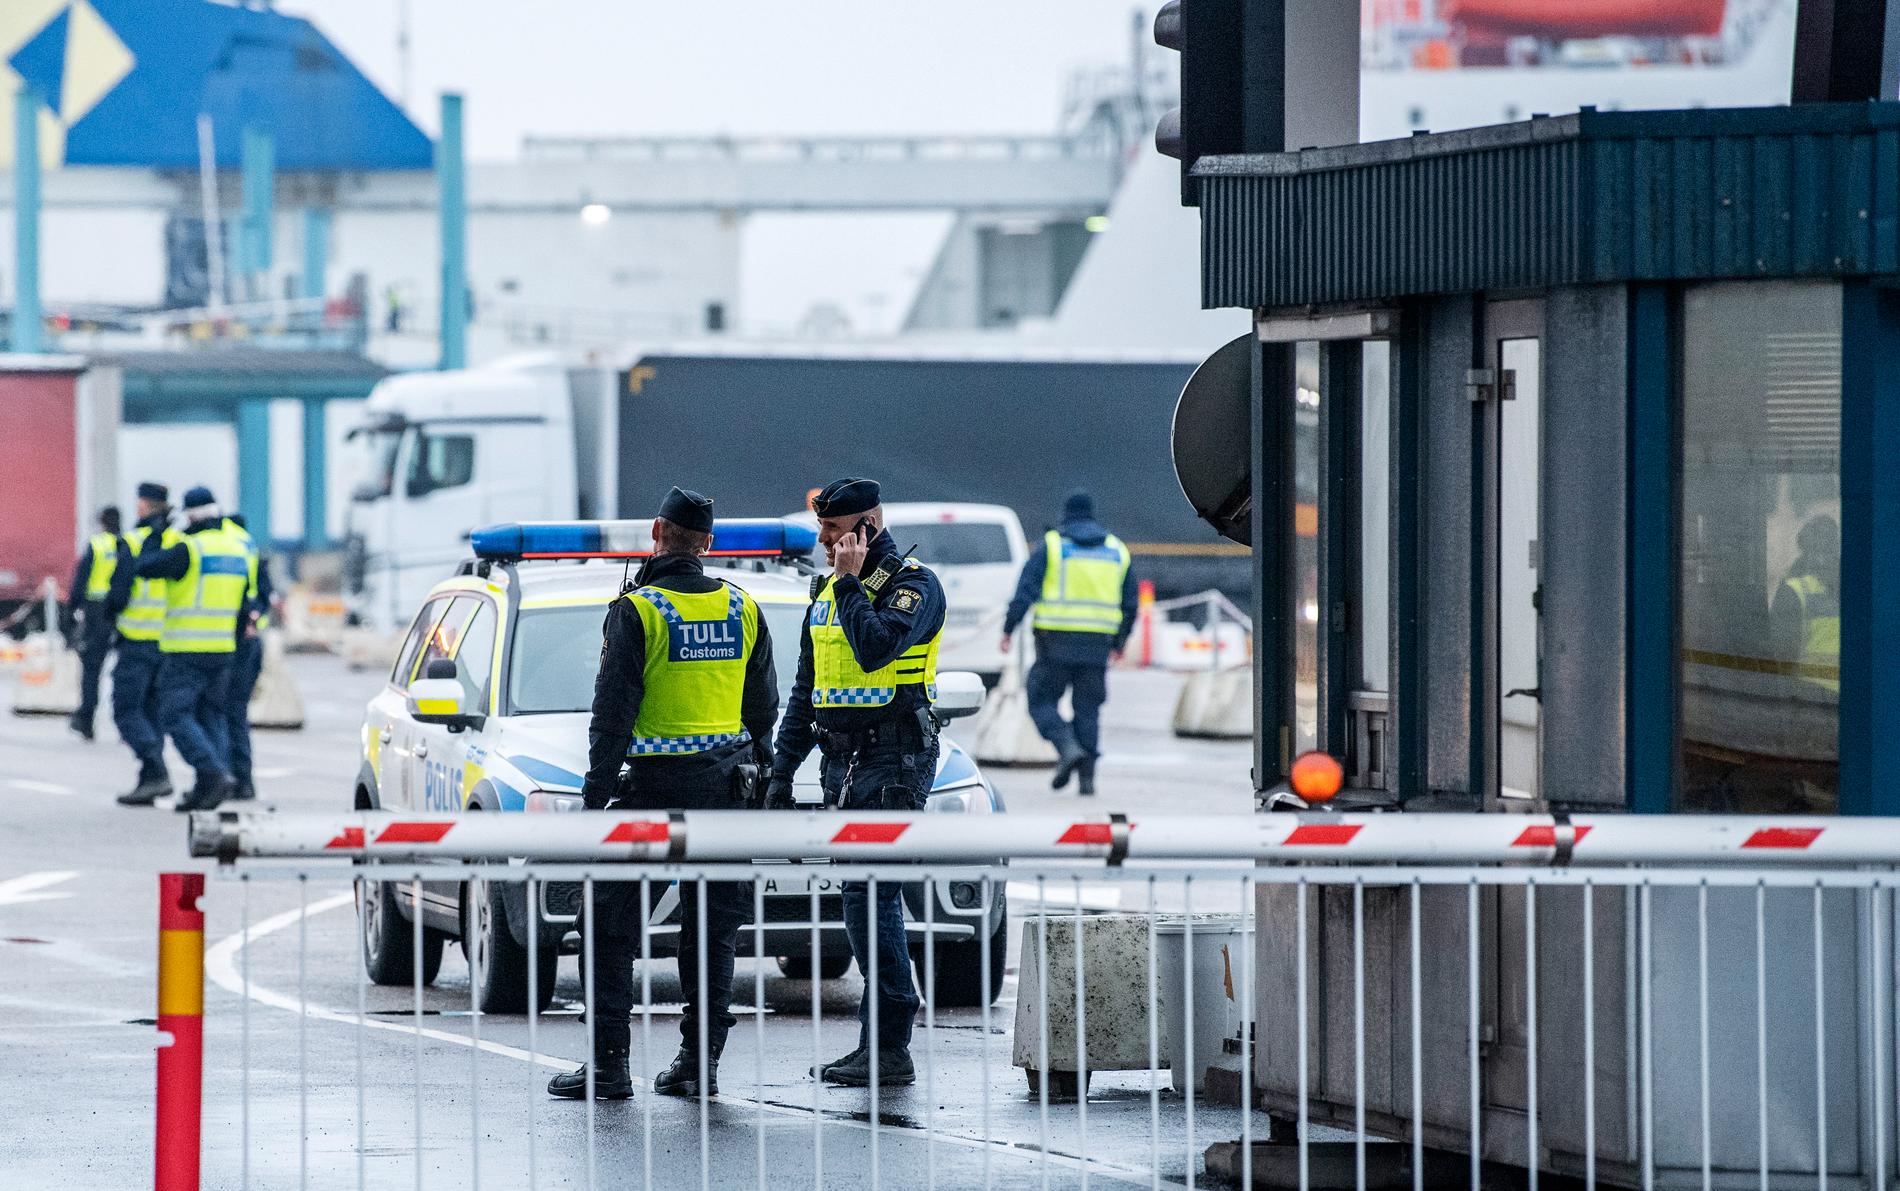 Polis, tull och kustbevakning deltar i den internationella operationen Trident som bland annat pågår i Trelleborgs hamn.